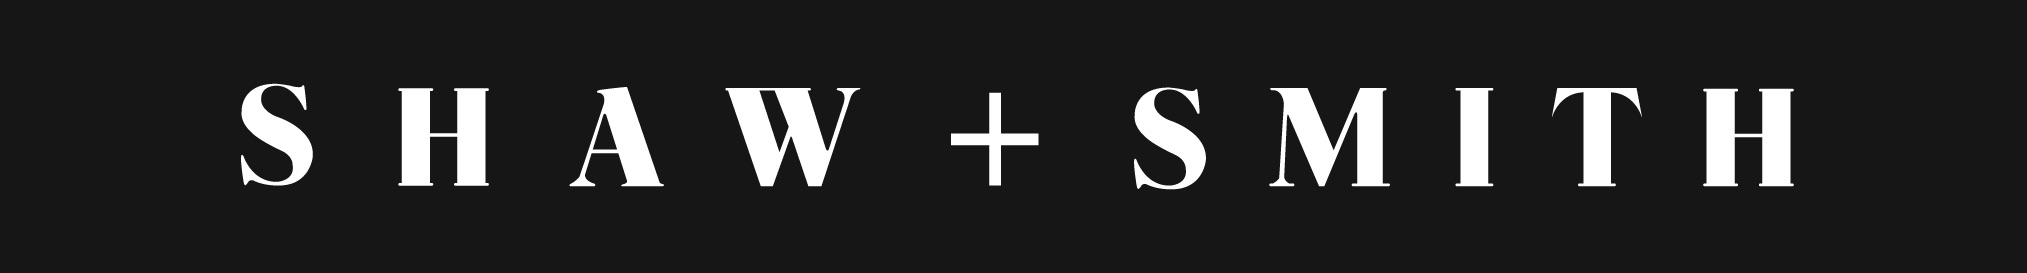 Shaw + Smith logo